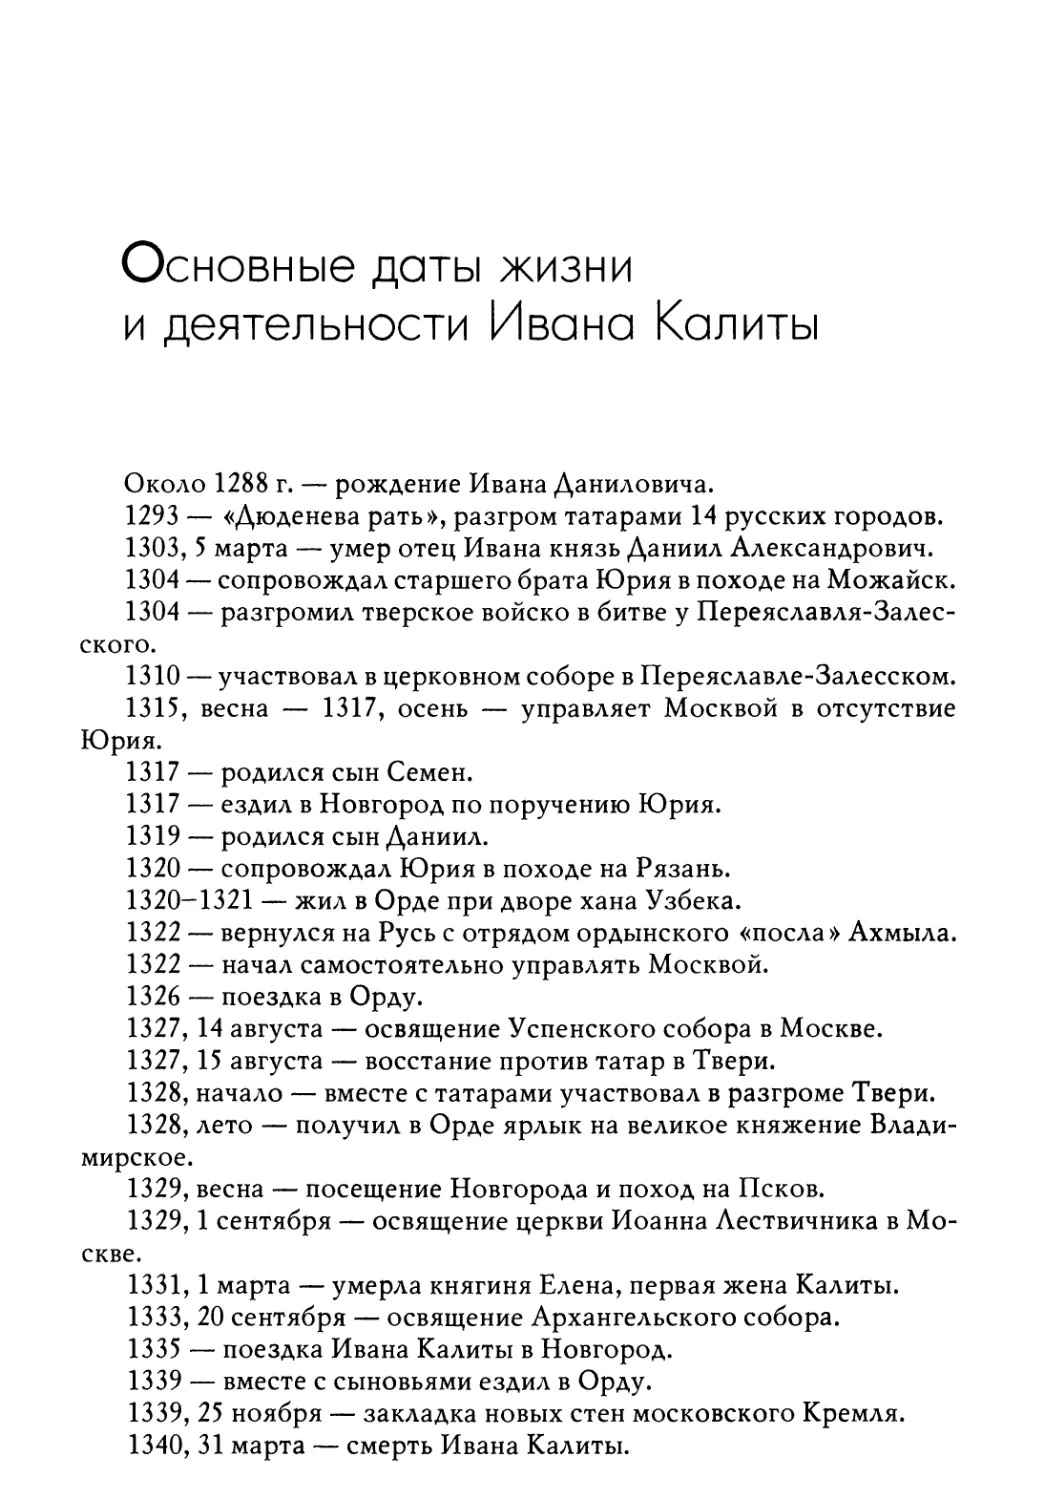 Основные даты жизни и деятельности Ивана Калиты